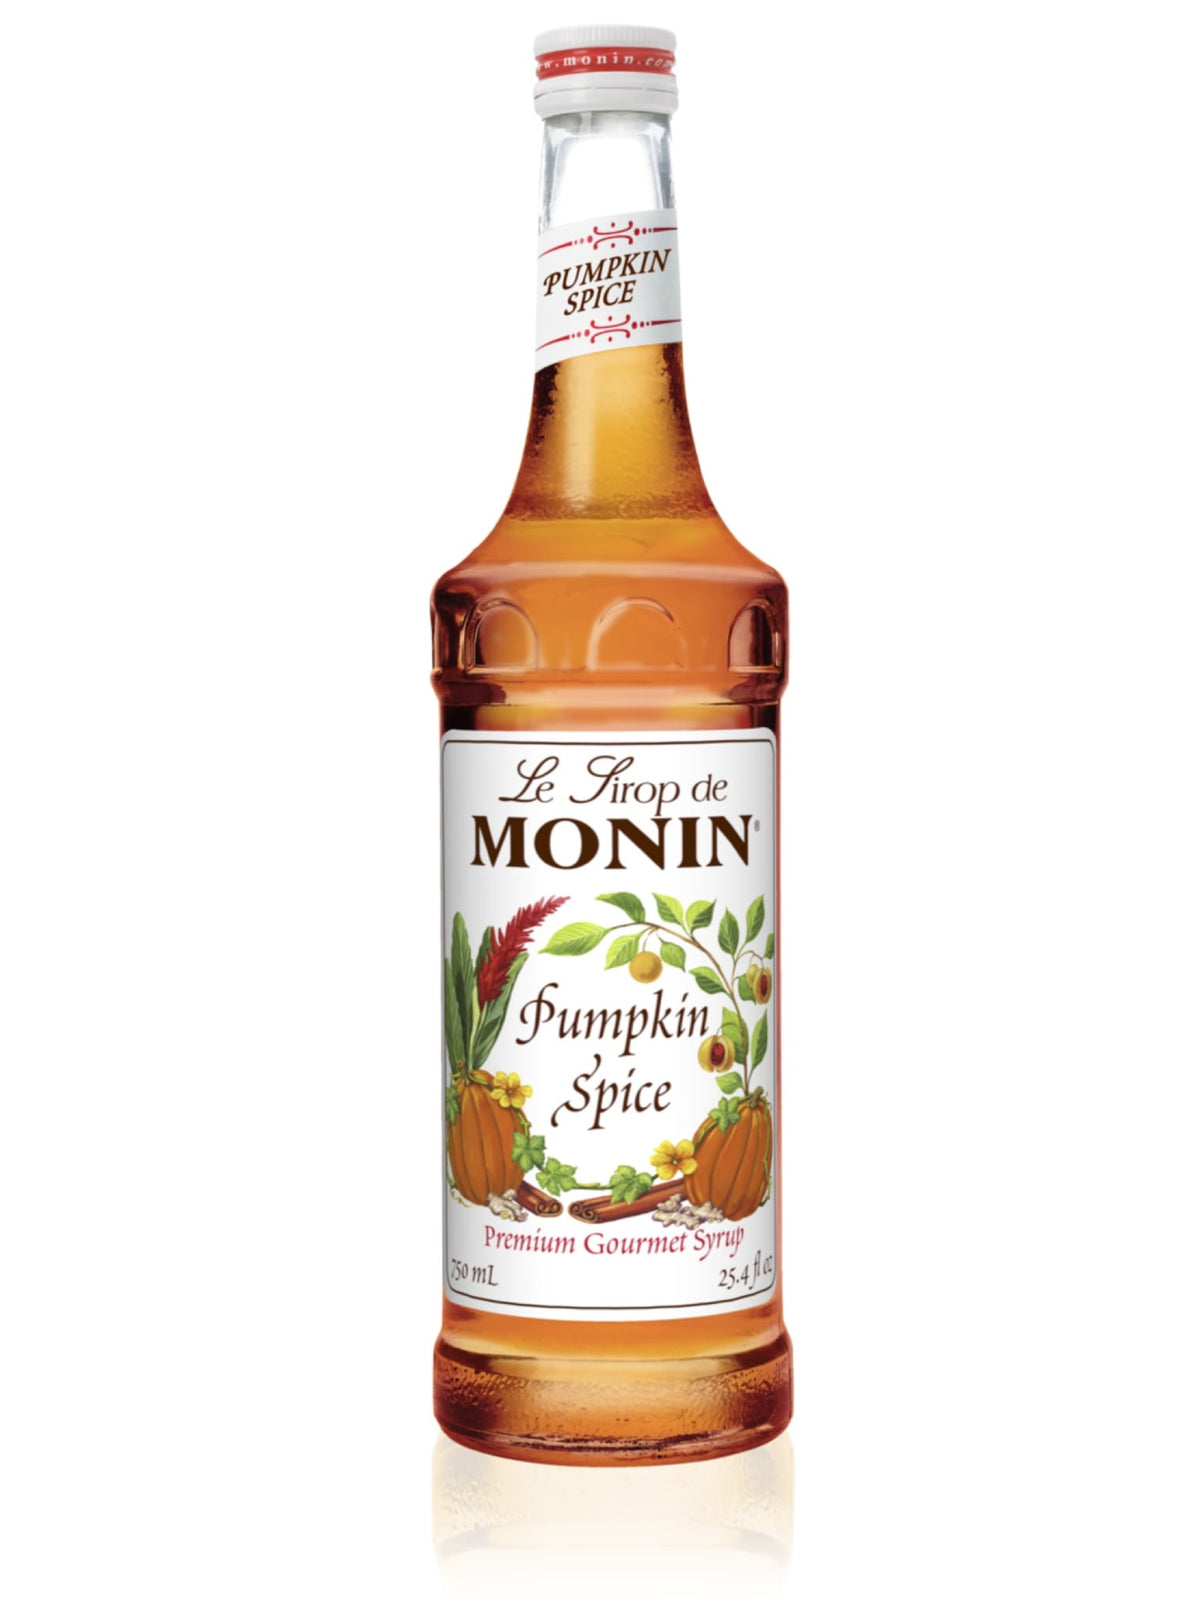 Monin Pumpkin Spice Sirup - tilføj en lækker efterårssmag til dine drinks med denne velsmagende og aromatiske pumpkin spice sirup fra Monin